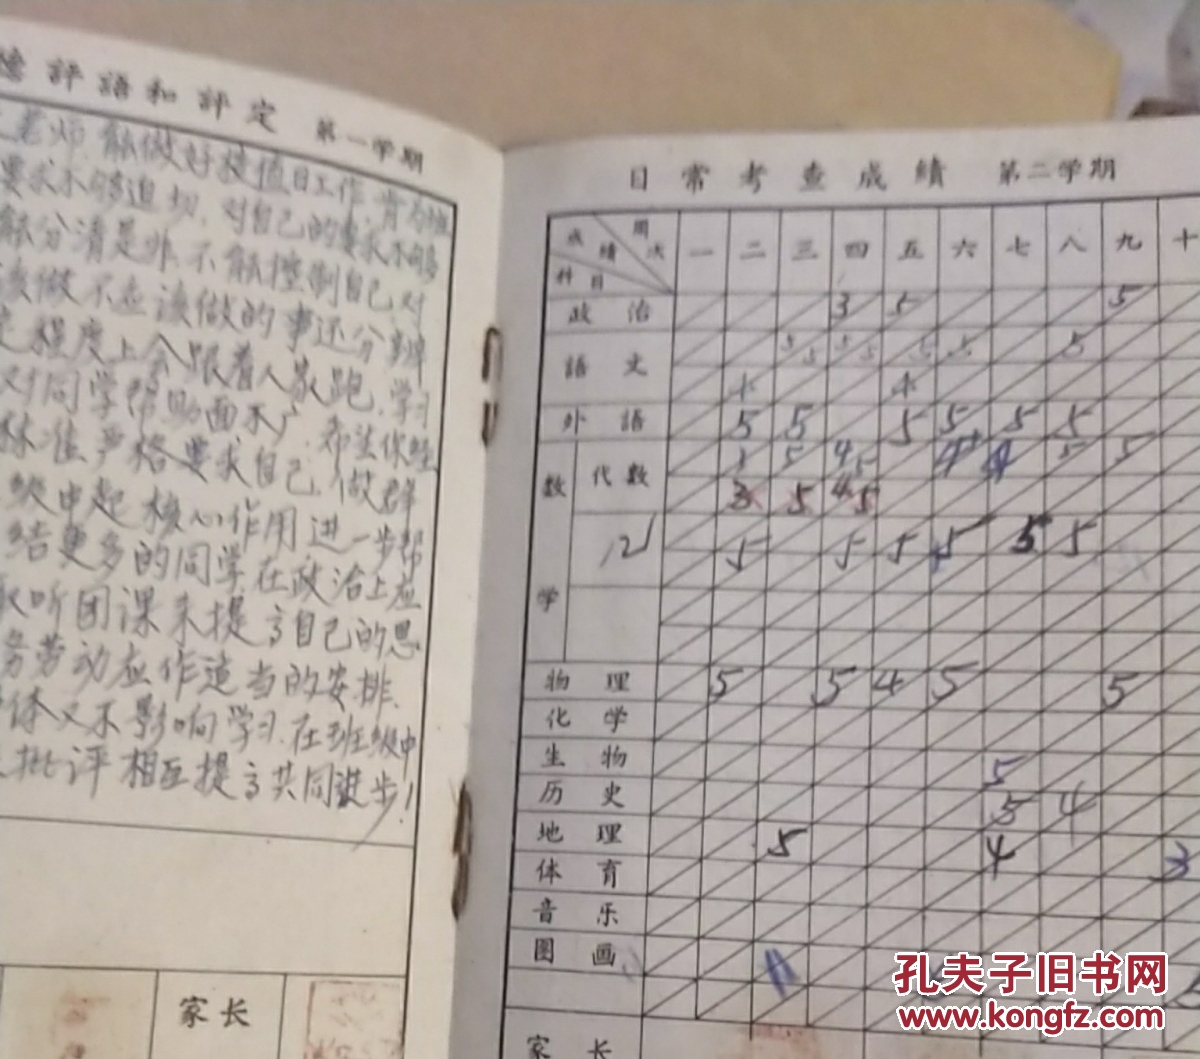 真实填写的上海中学生手册,1960年代上海第十